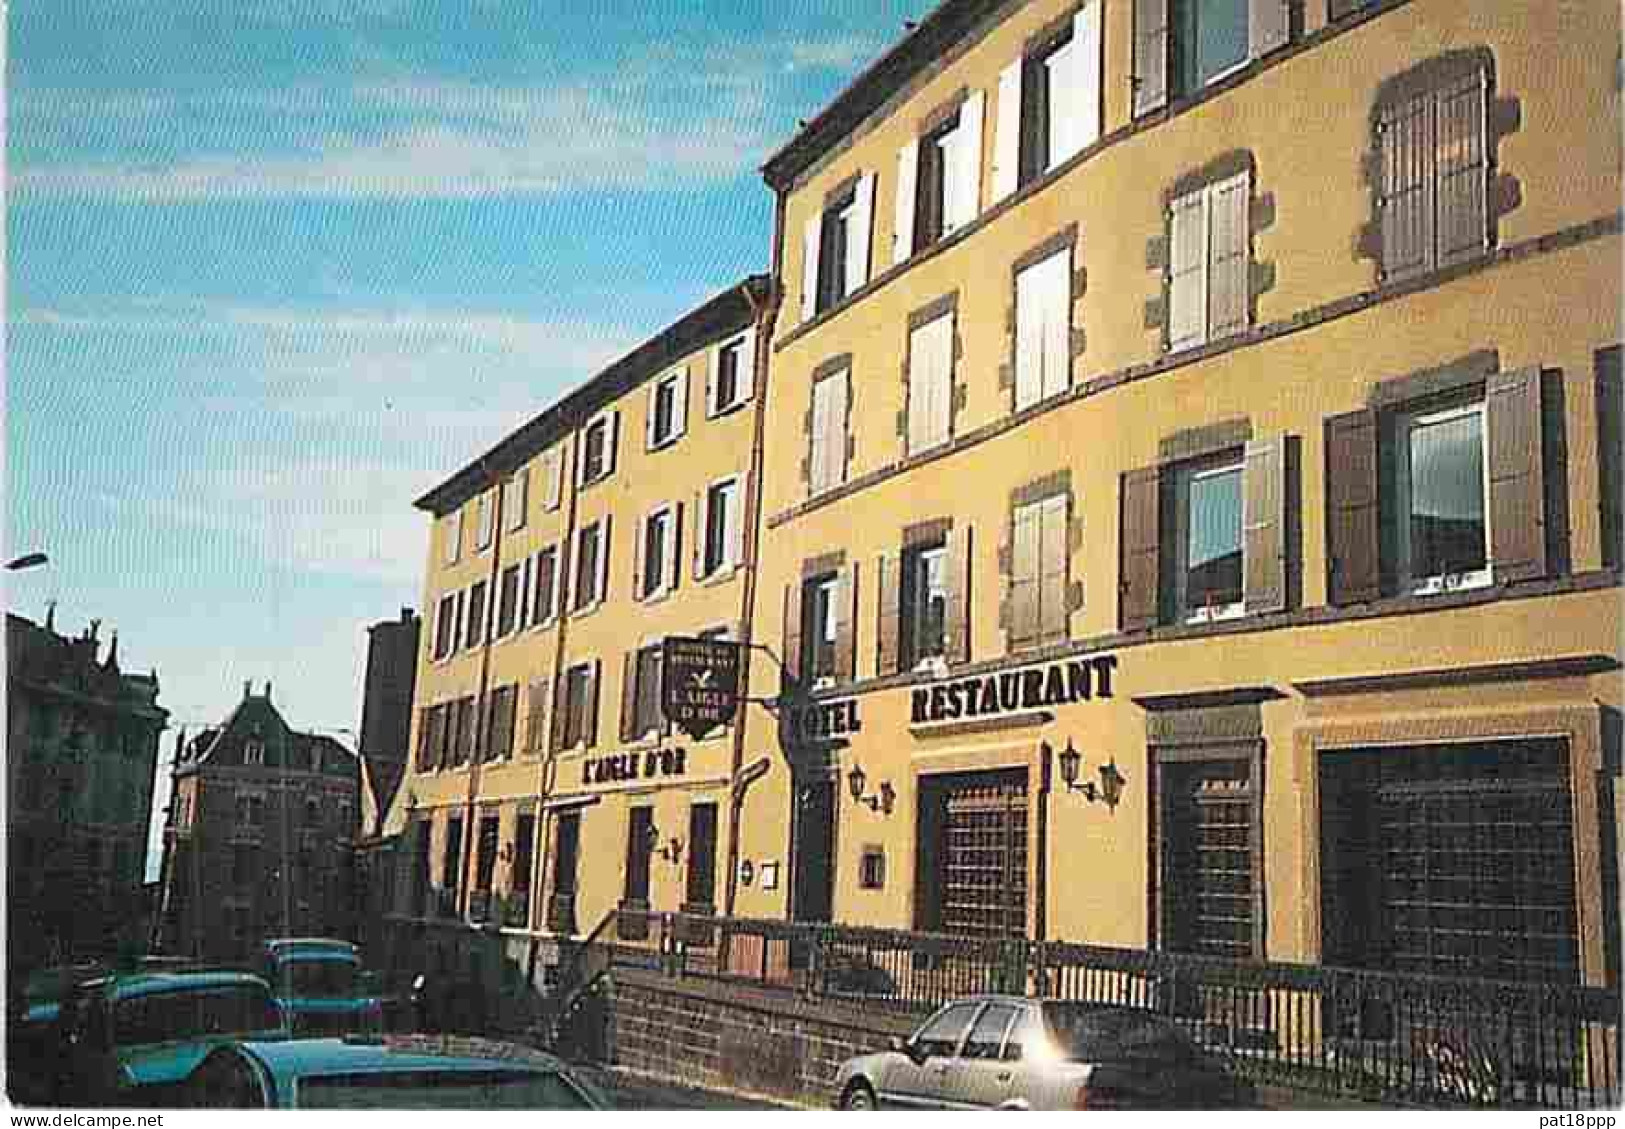 Lot de 20 cartes HOTEL et/ou RESTAURANT - Dpt 63 - Puy de Dôme (FRANCE)  CPSM-CPM grand format (années 1960-90)